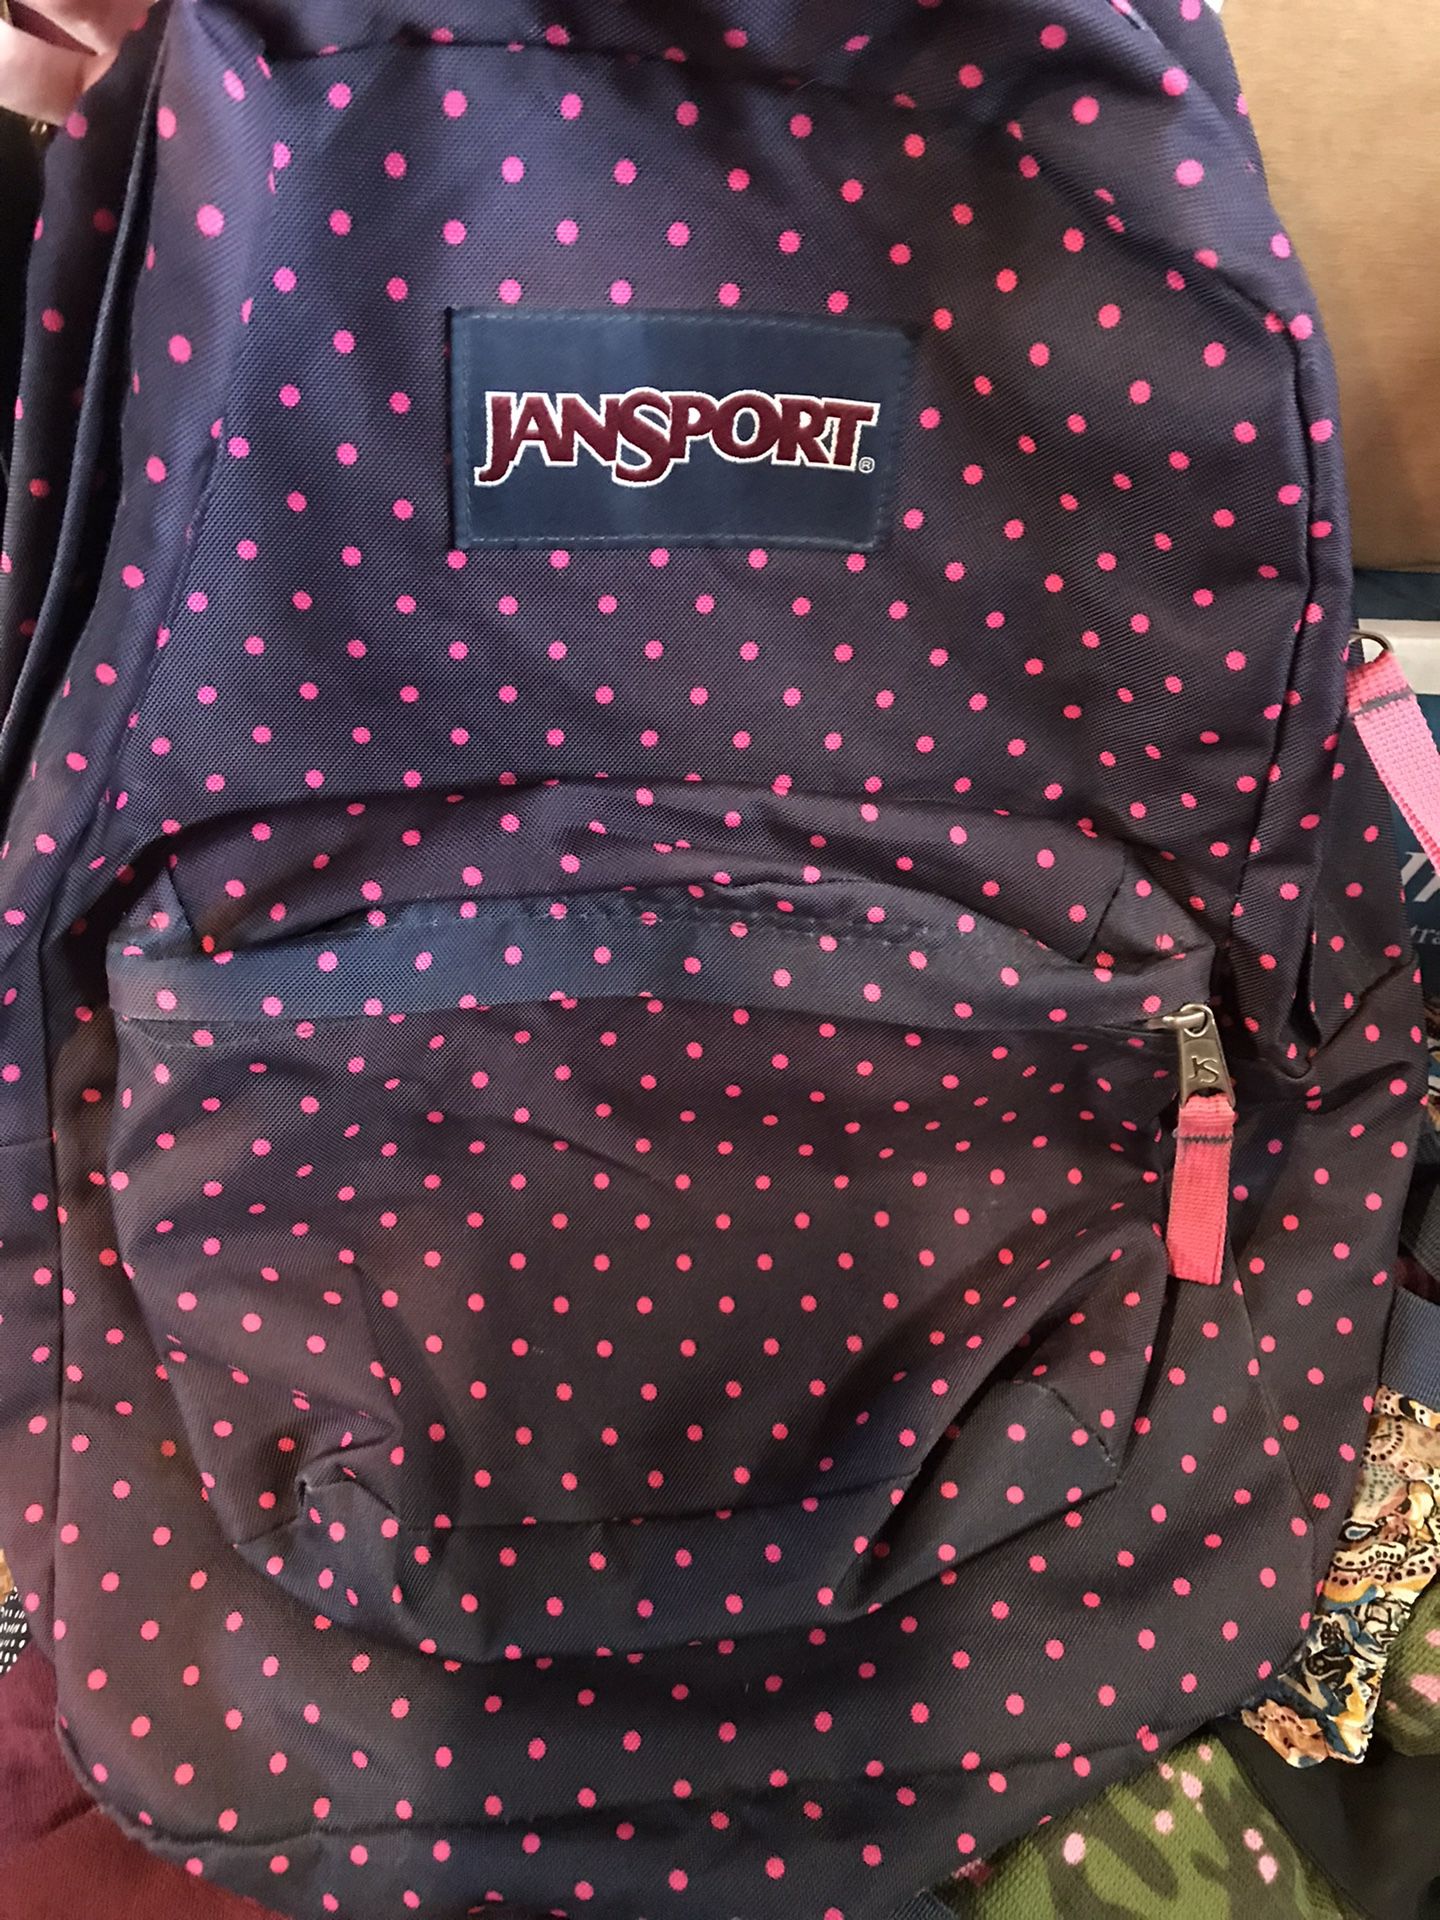 JANSPORT Backpack *NEW*  $15